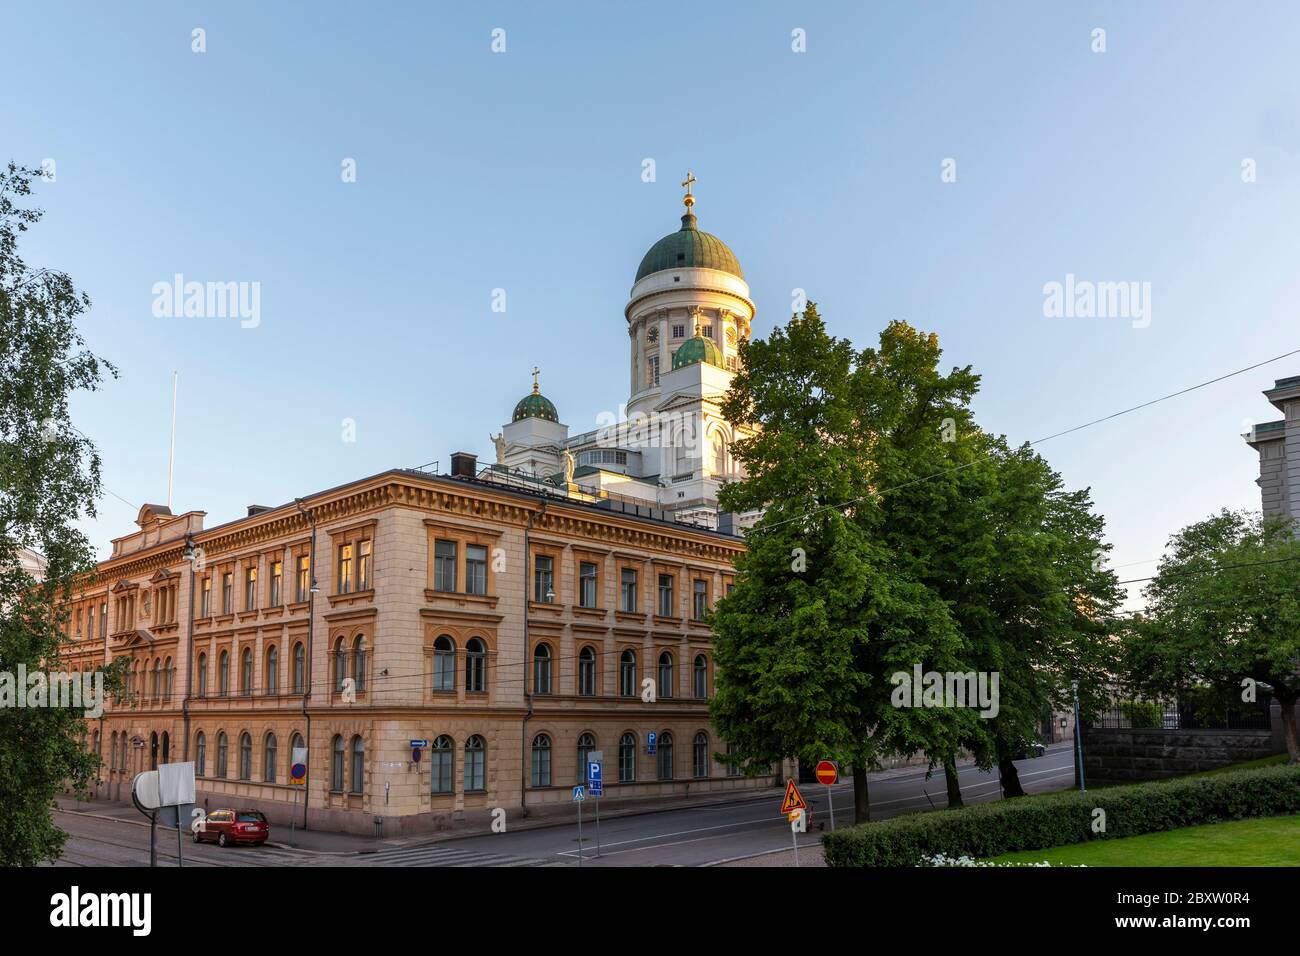 La Cattedrale di Helsinki è il punto di riferimento più iconico del centro della capitale finlandese. E' circondato da edifici storici di epoca russa. Foto Stock